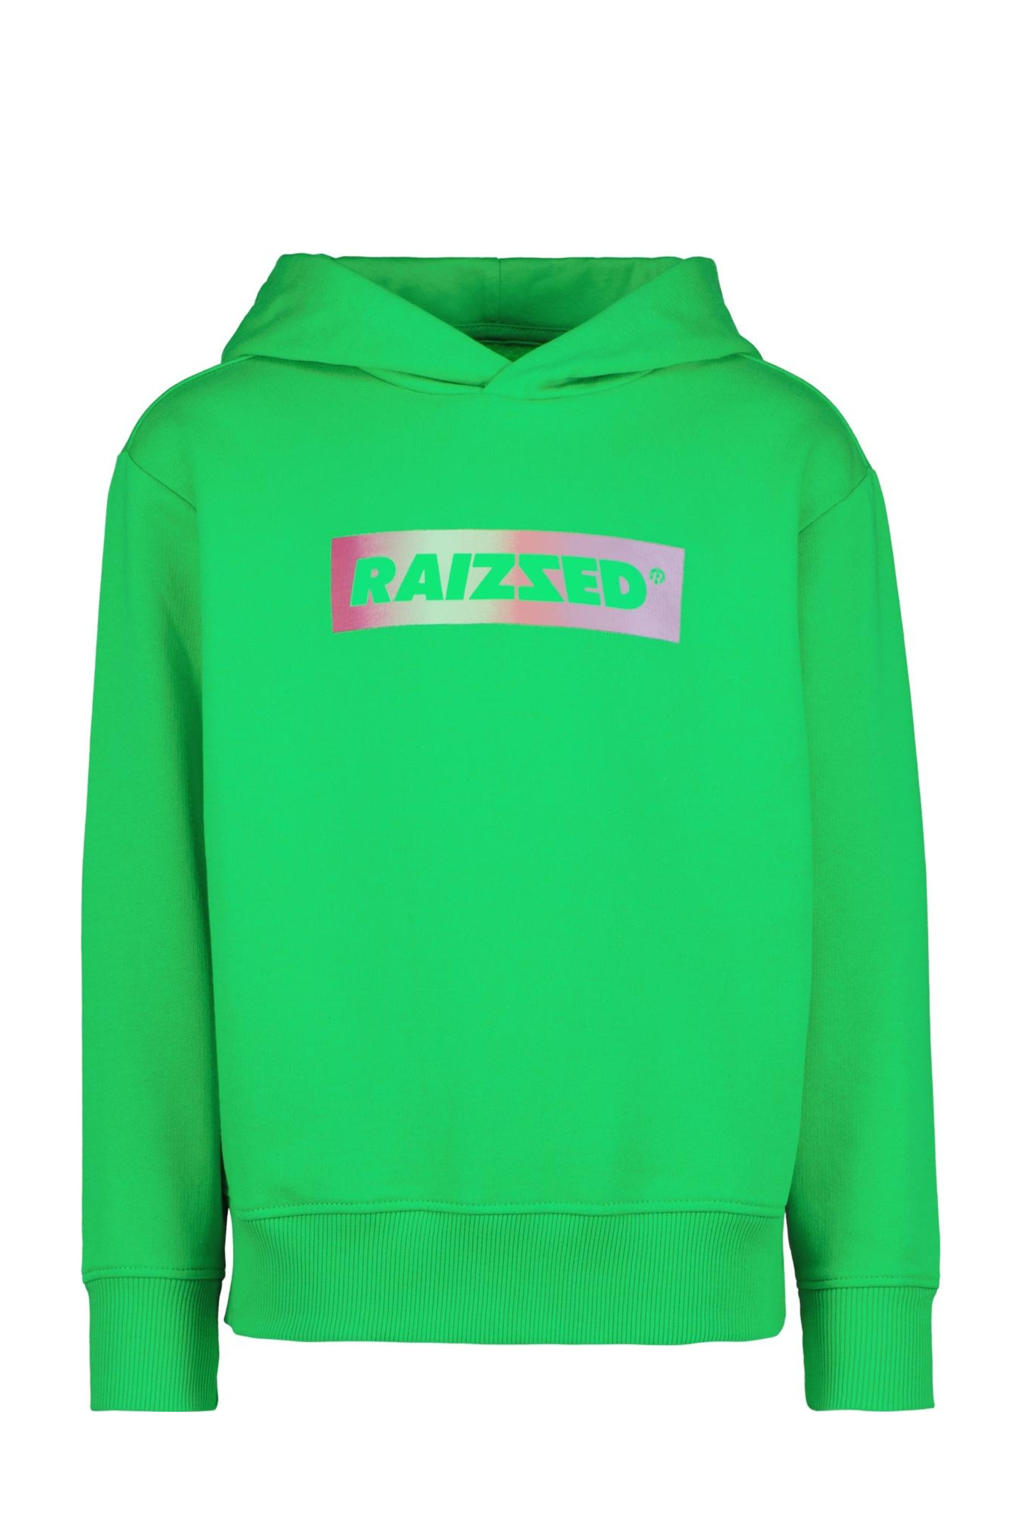 Raizzed hoodie met logo groen